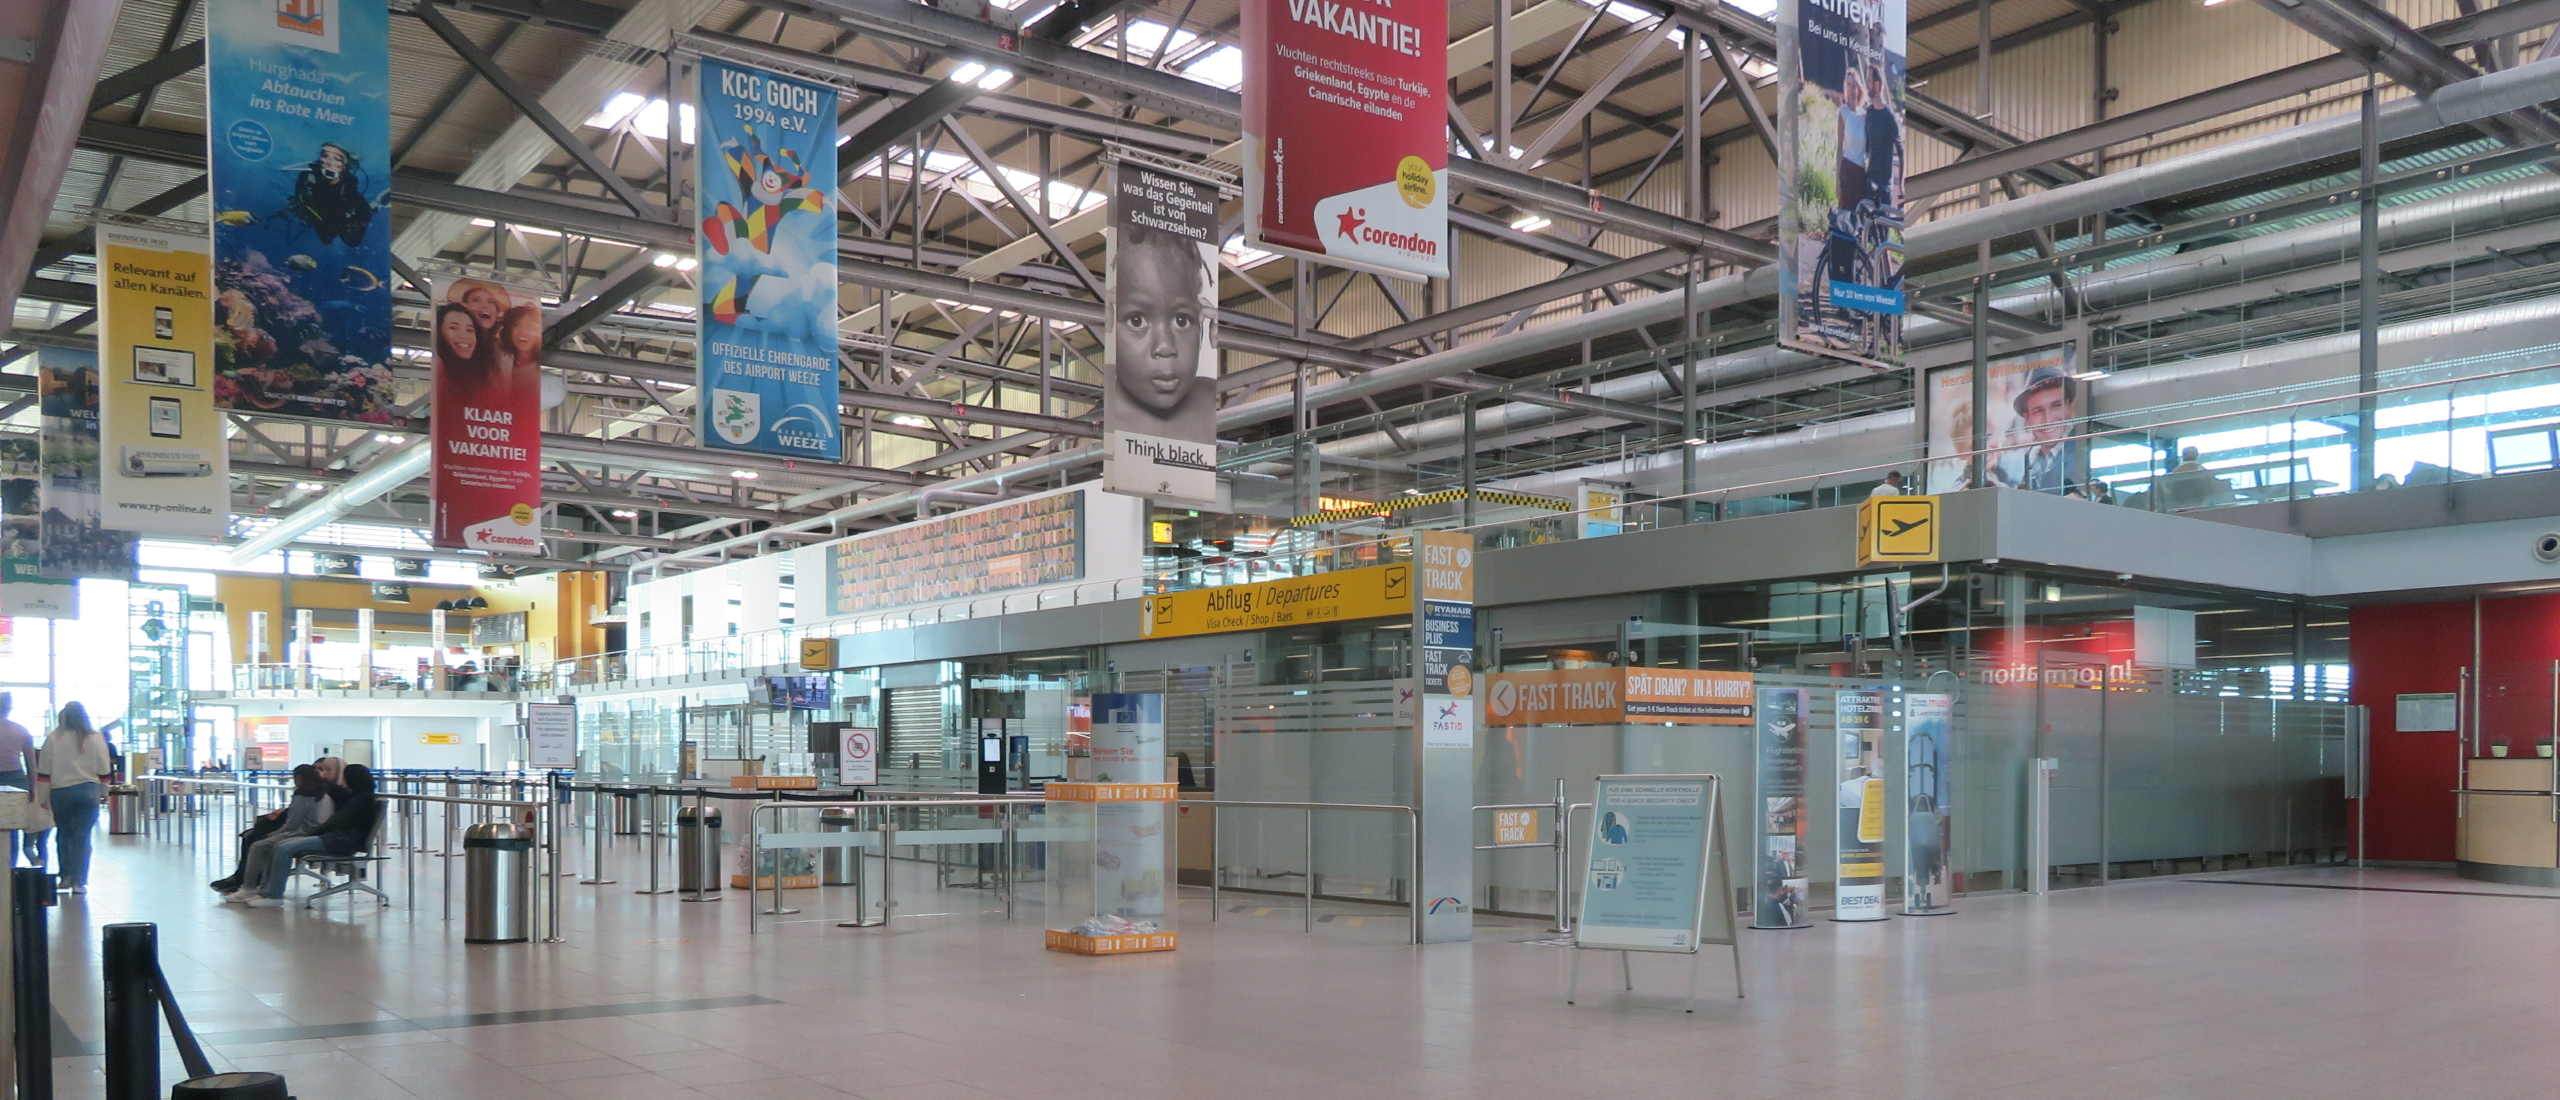 airport-weeze-terminal